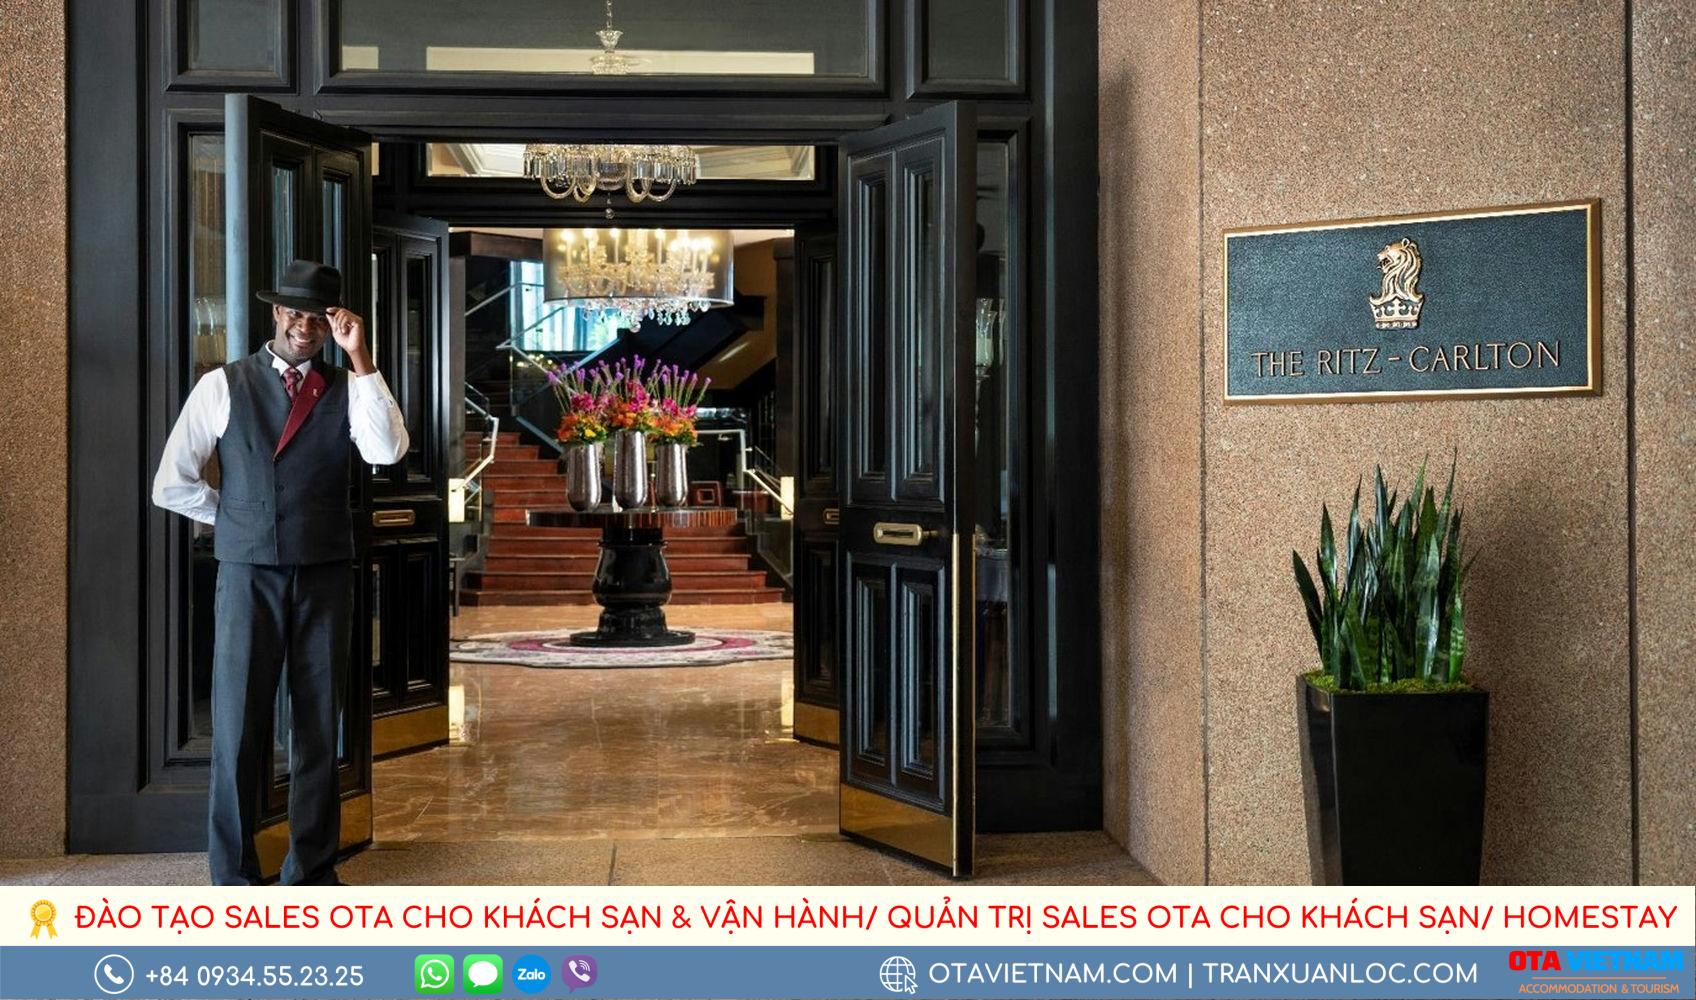 Tieu Chuan Vang Duoc Khoi Xuong Tu Chuoi Khach San Ritz Carlton Noi Tieng2 1000px